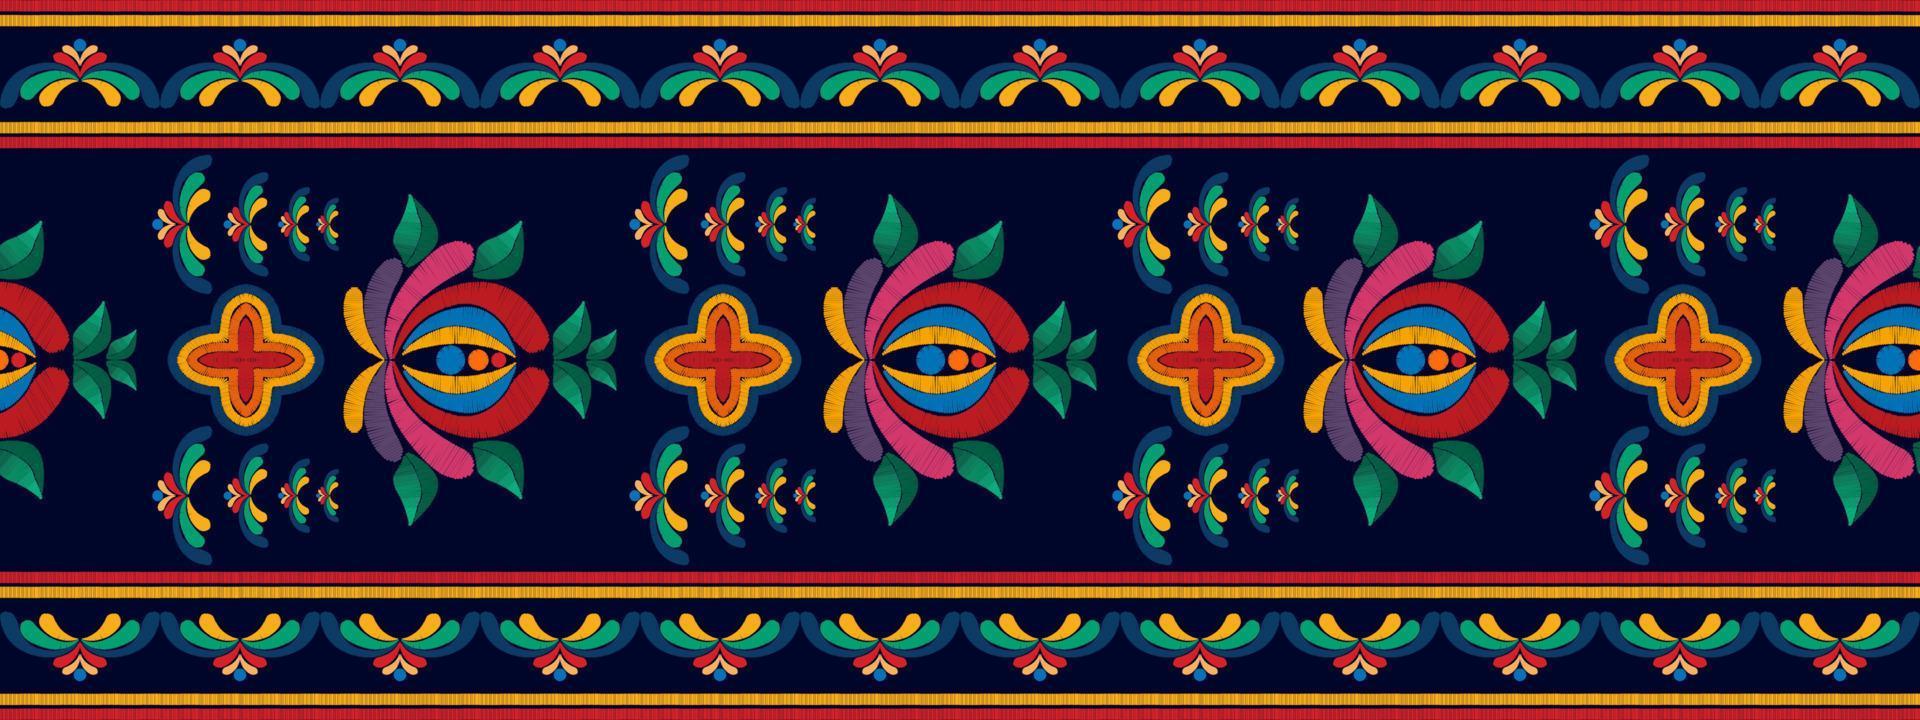 Diseño de decoración del hogar de patrones sin fisuras étnicos ikat. tela azteca alfombra boho mandalas textil decorar papel tapiz. motivo nativo tribal bordado tradicional vector fondo ilustrado